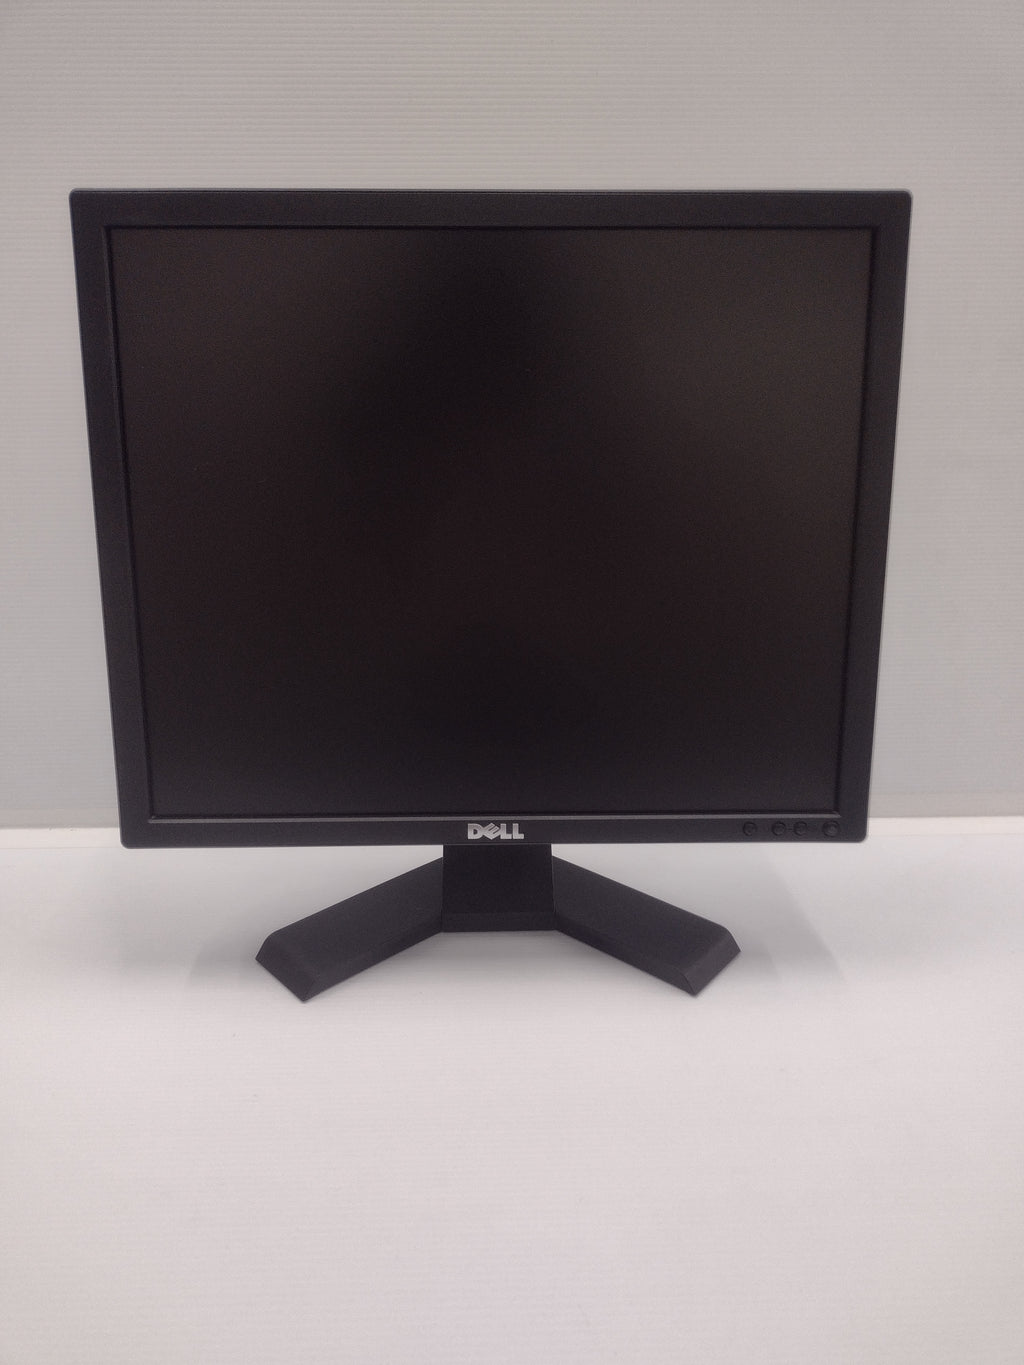 DELL E190Sf 19" 1280 x 1024 75 Hz 5 ms 5:4 LCD Monitor